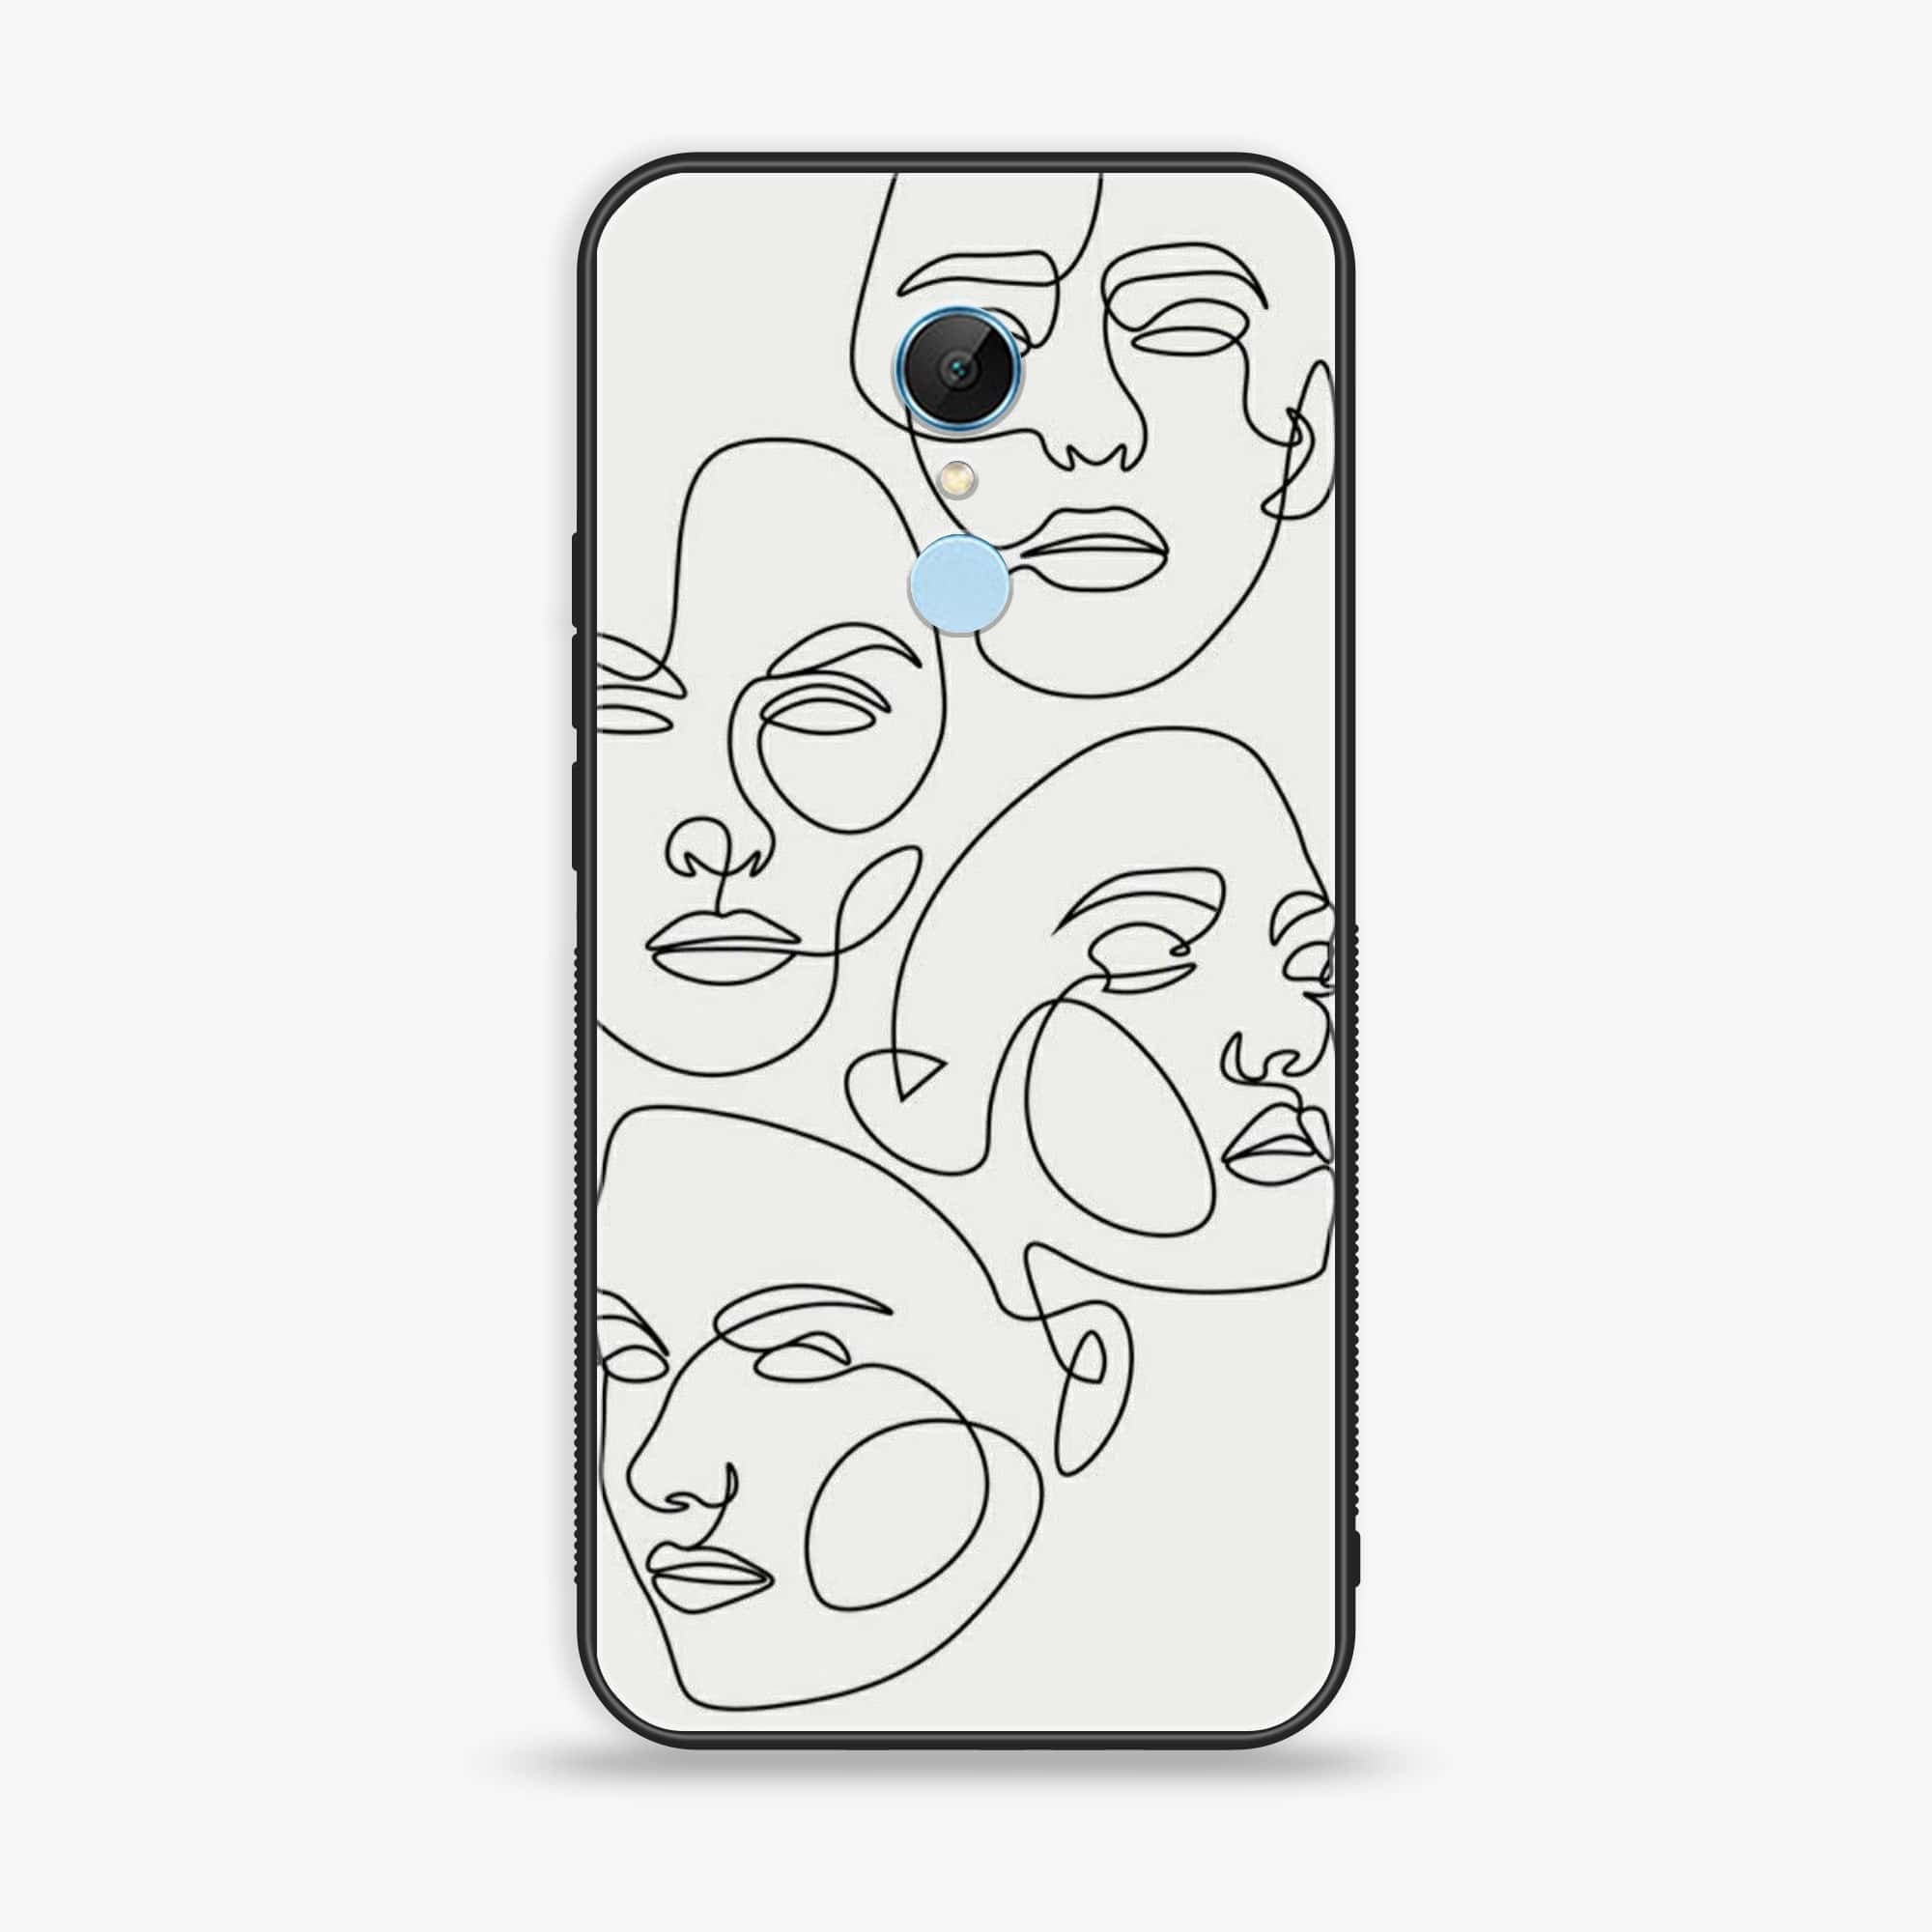 Xiaomi Redmi 5 - Girls Line Art Series - Premium Printed Glass soft Bumper shock Proof Case